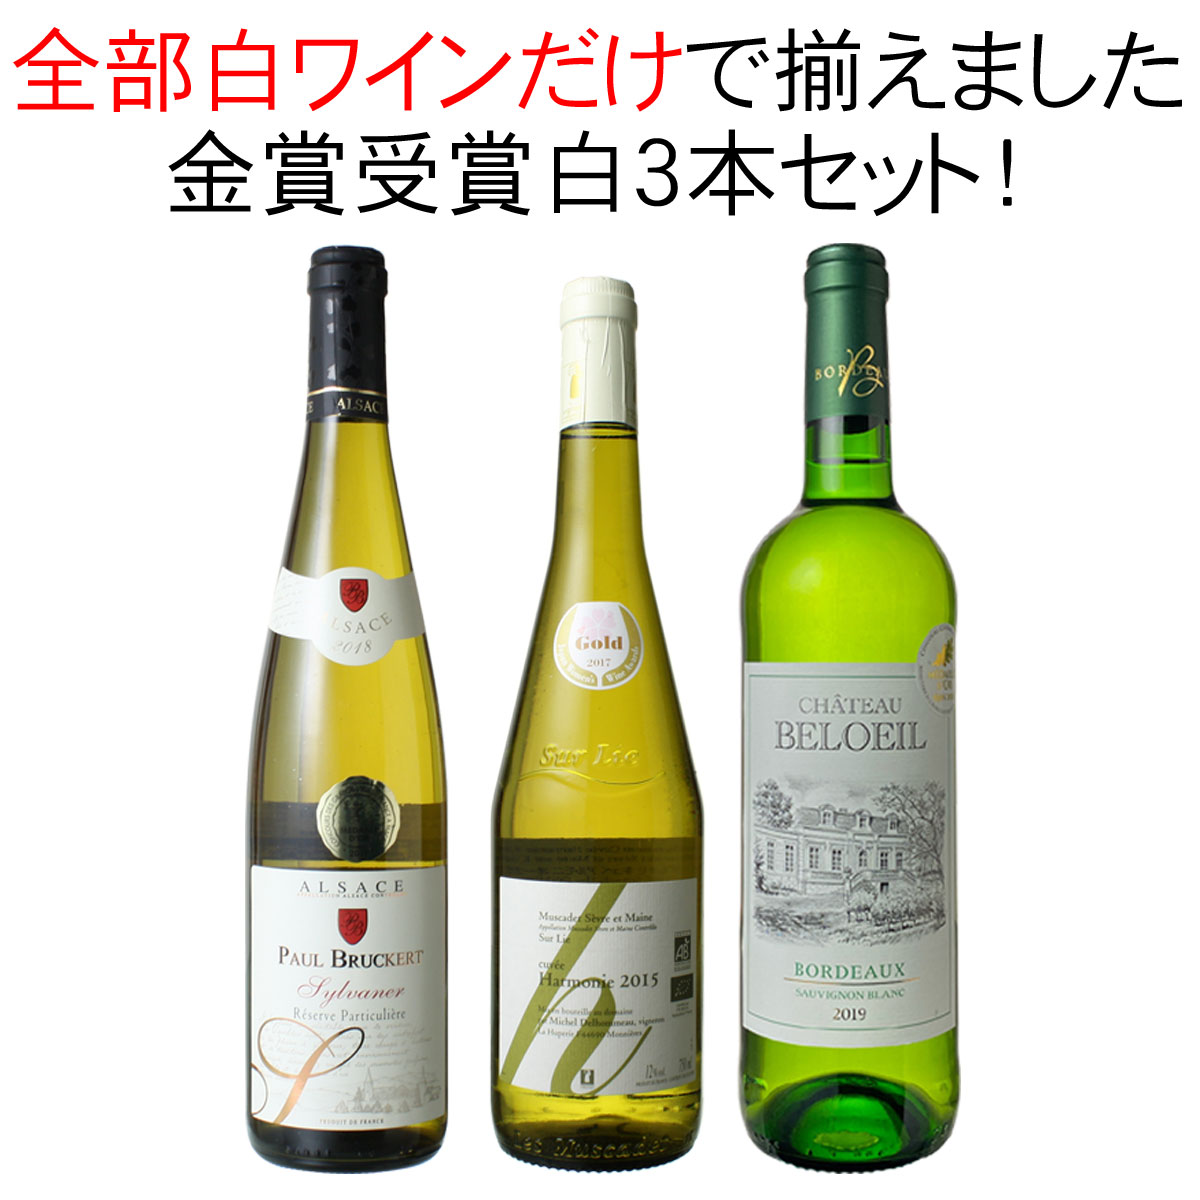 【送料無料】ワインセット 金賞 白ワイン 3本 セット ボルドー ミュスカデ ラングドック 辛口 白金